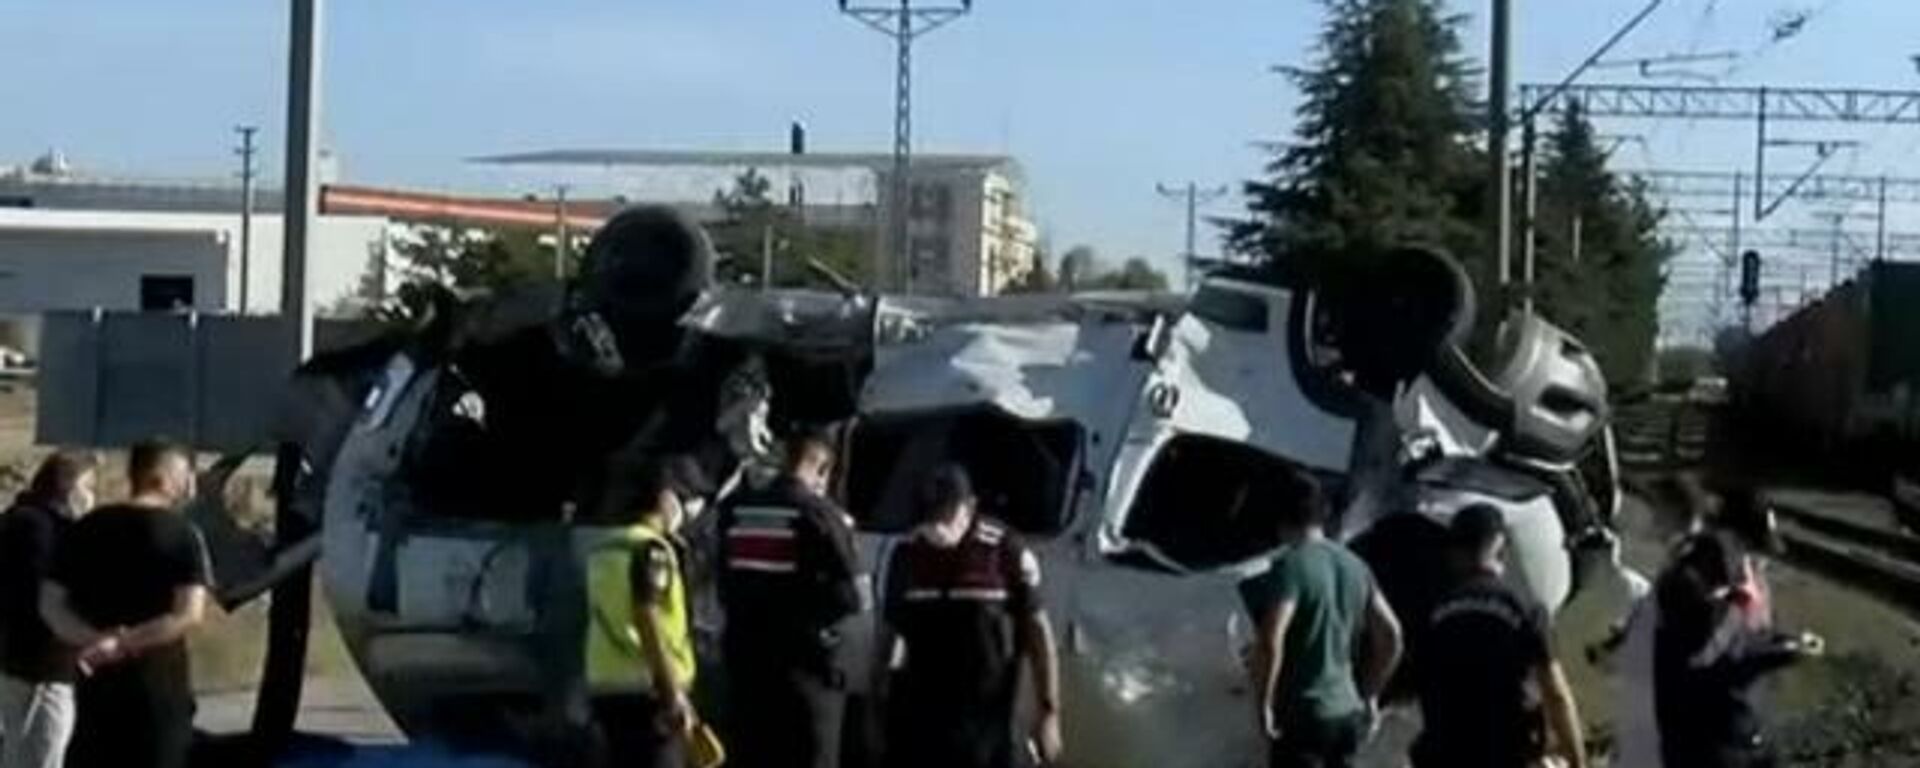 Tekirdağ'ın Ergene ilçesinde yük treni hemzemin geçitte bir minibüse çarptı. 4 kişi hayatını kaybetti. - Sputnik Türkiye, 1920, 05.09.2021